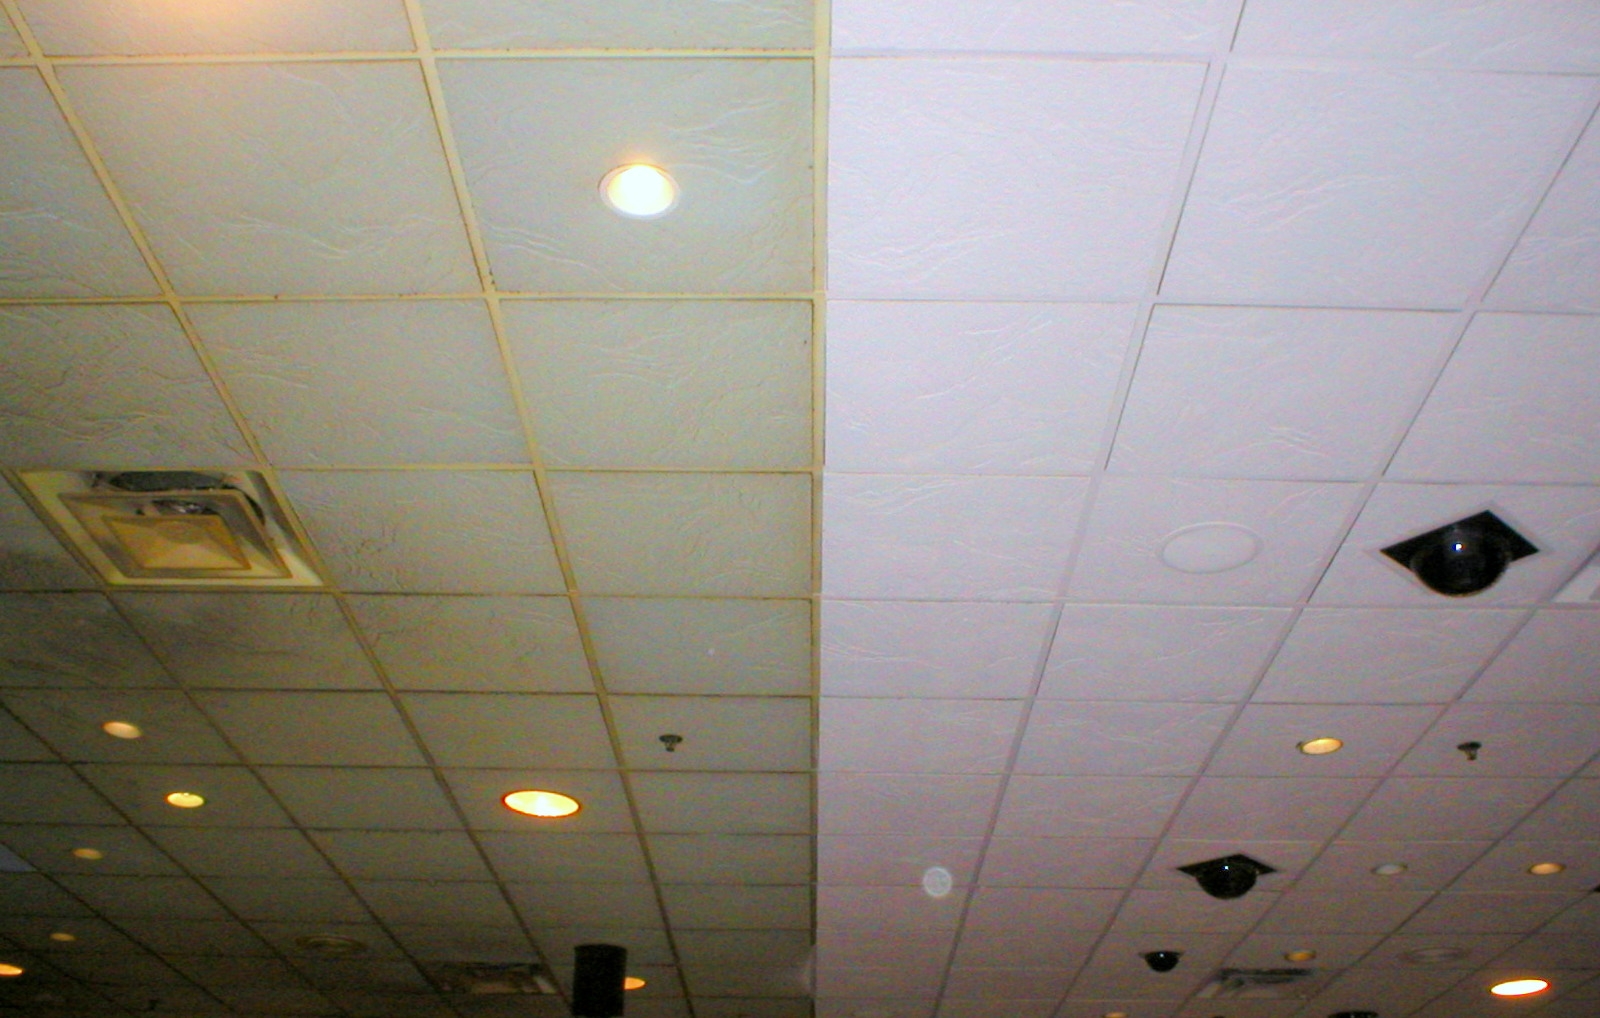 Old Ceiling Tile Art Old Ceiling Tile Art ceiling painting ceiling tiles inspirational painting basement 1600 X 1018